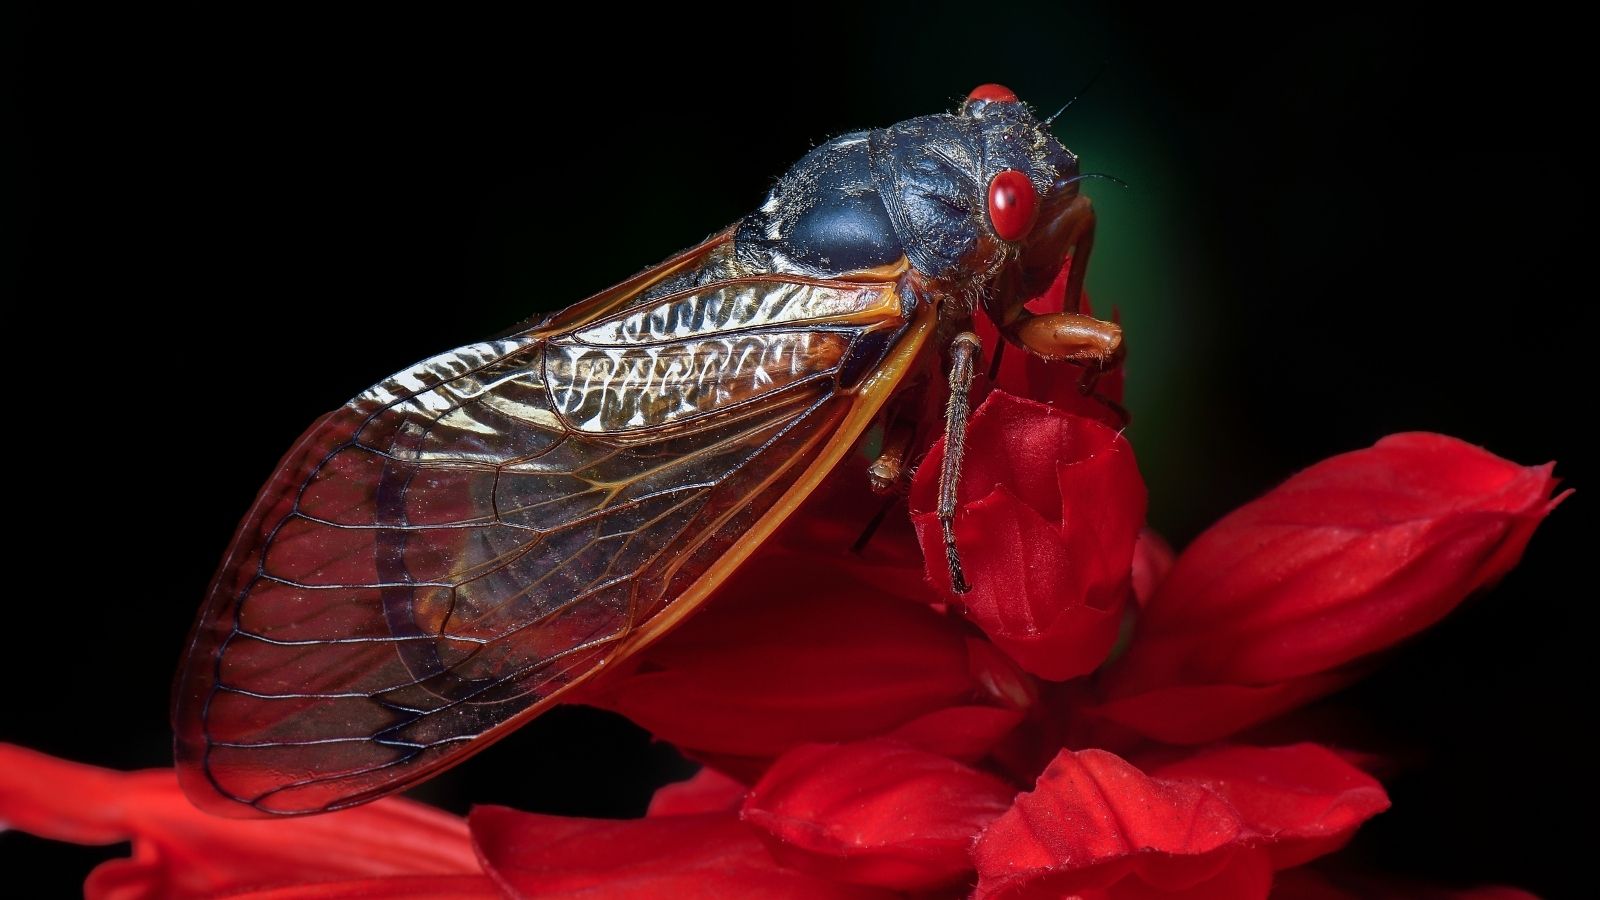 Brood X Cicada